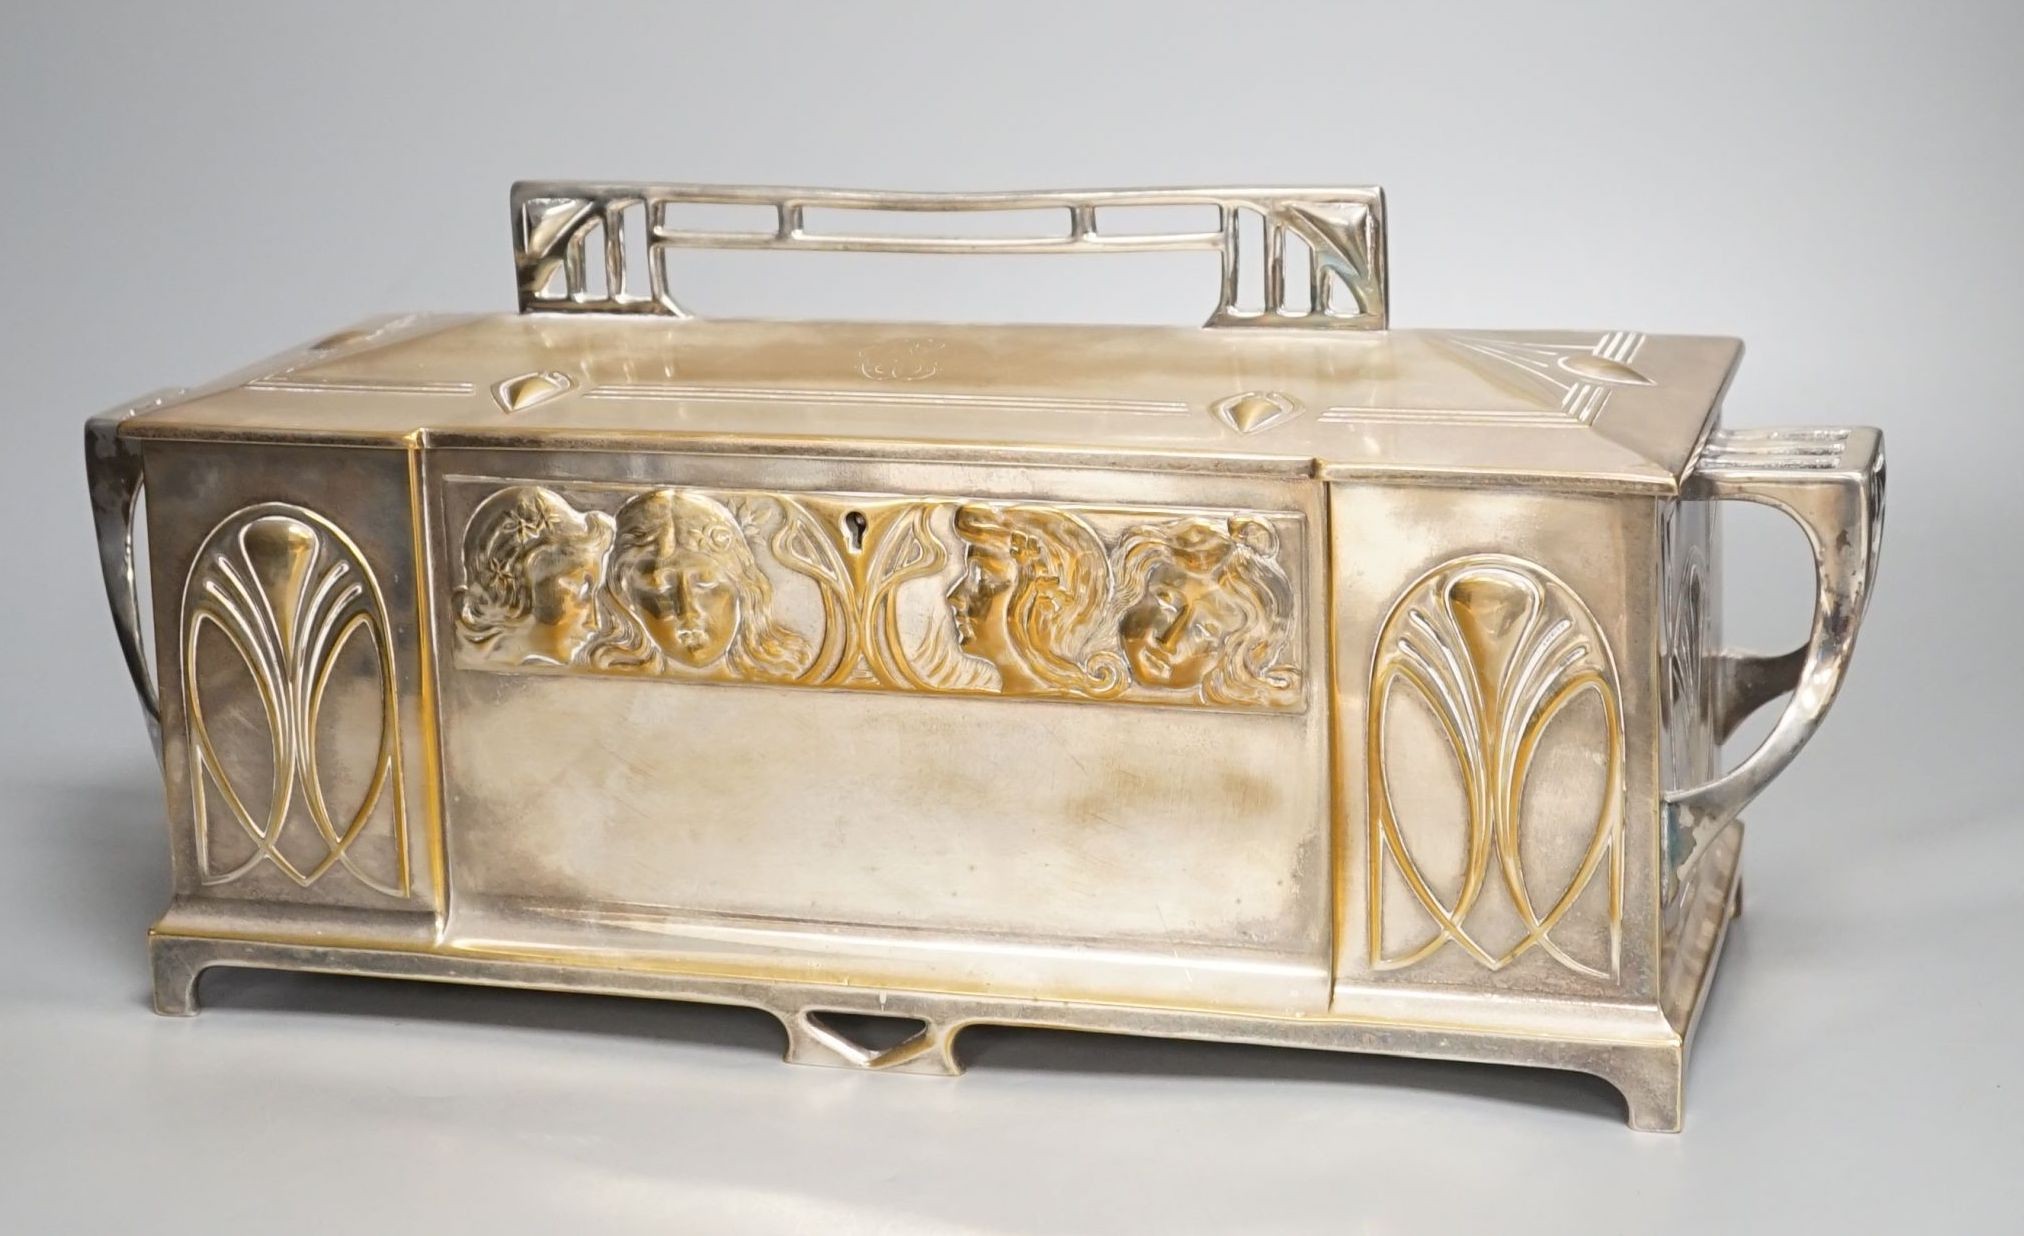 A large WMF Jugendstil plated two handled casket- 42 cms wide.